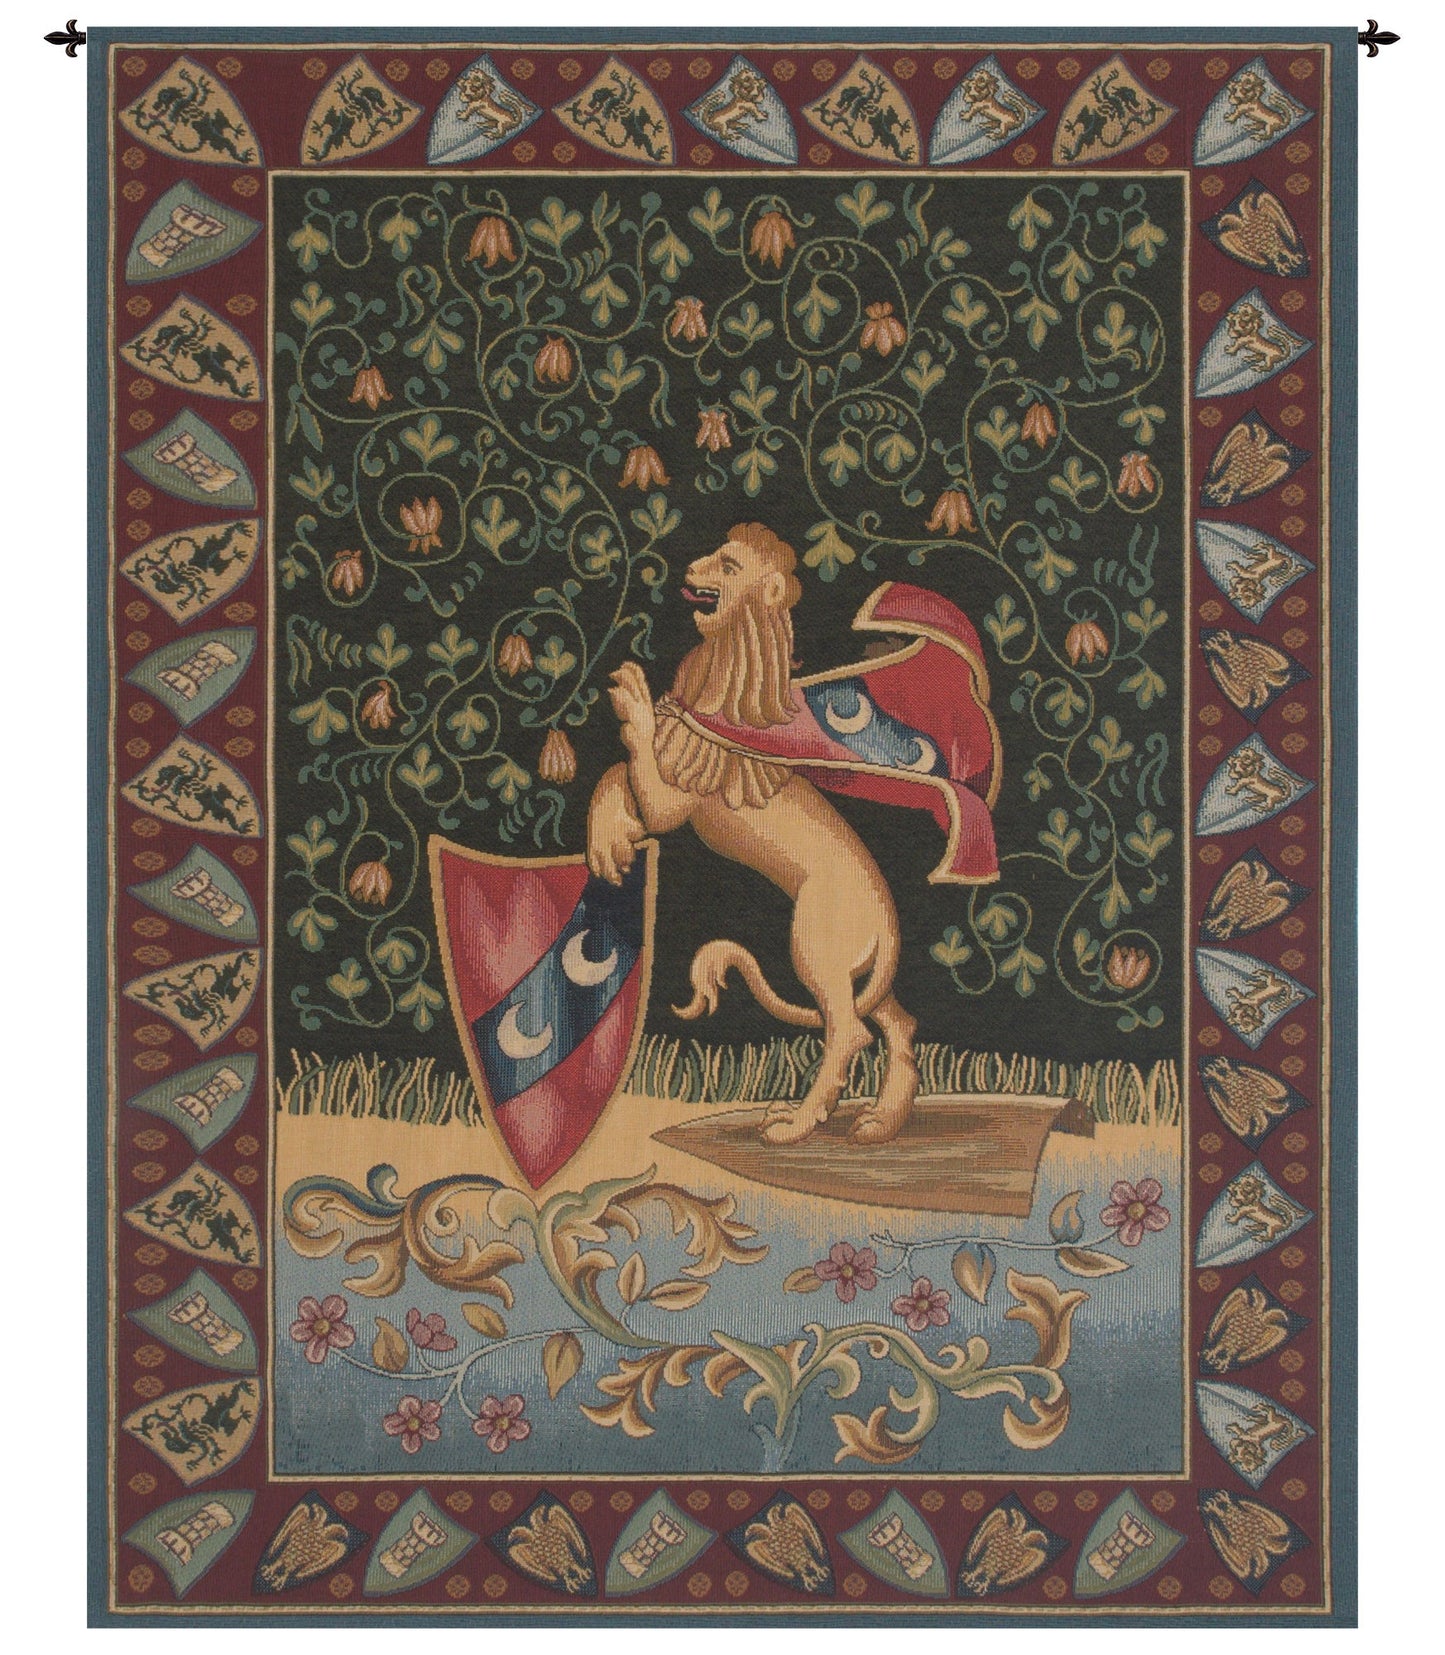 Lion Medieval Italian Tapestry - RoseStraya.com